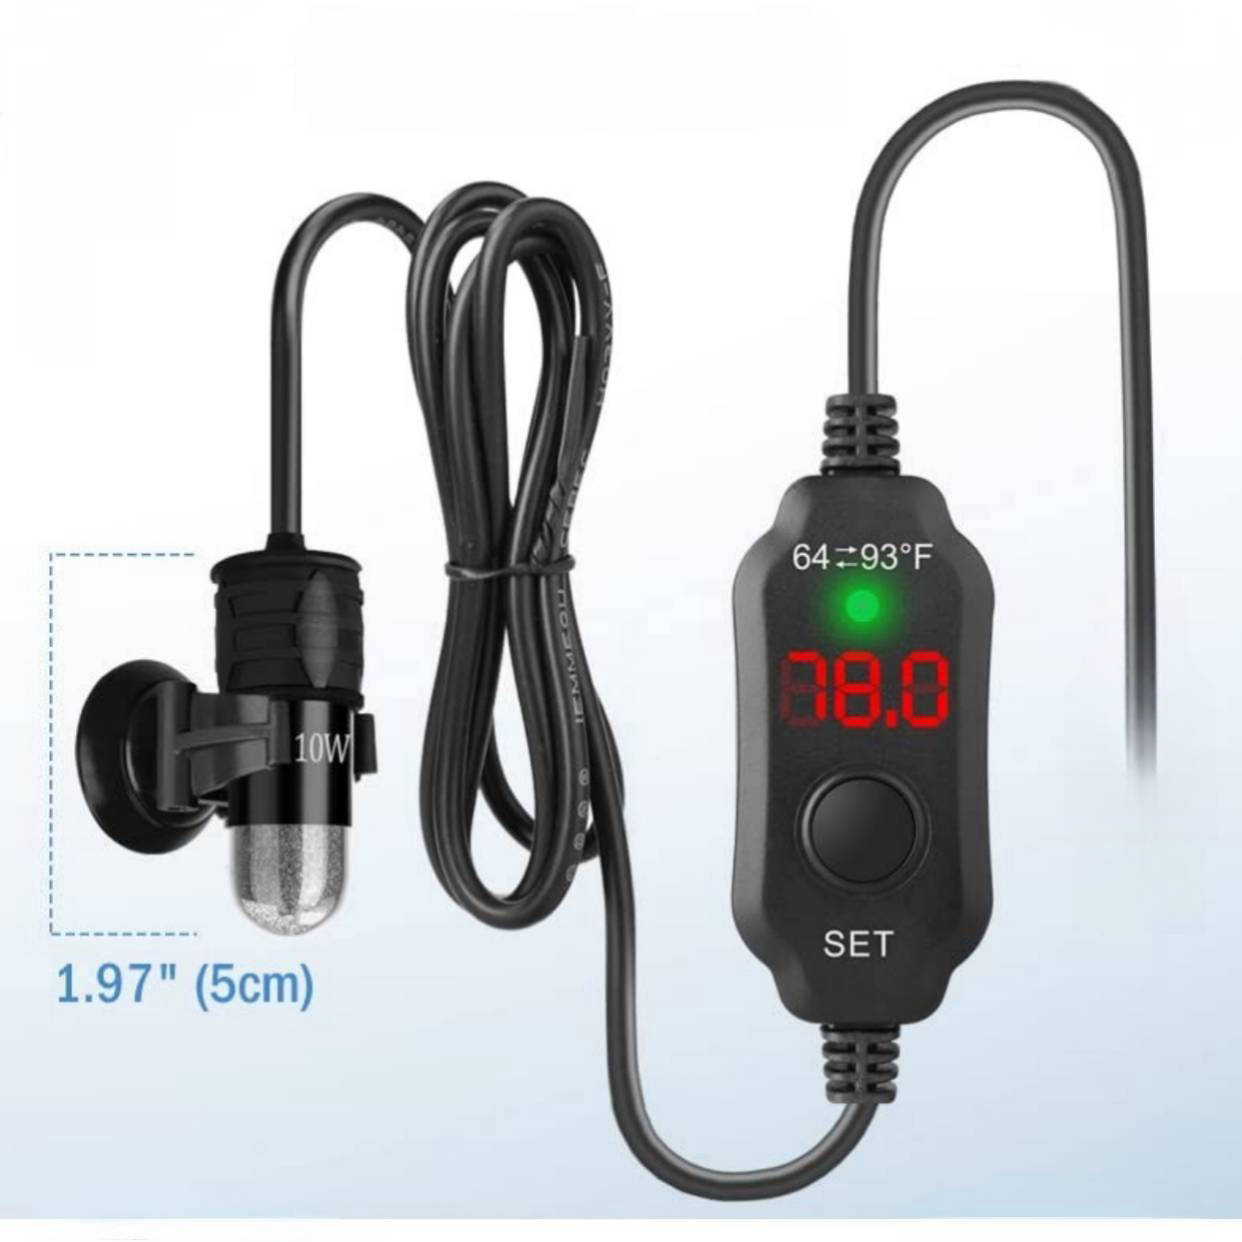 10 Watt Adjustable Mini Aquarium Heater for 1 Gallon Fish Tank | Digital Display | AC Wall Plug-In